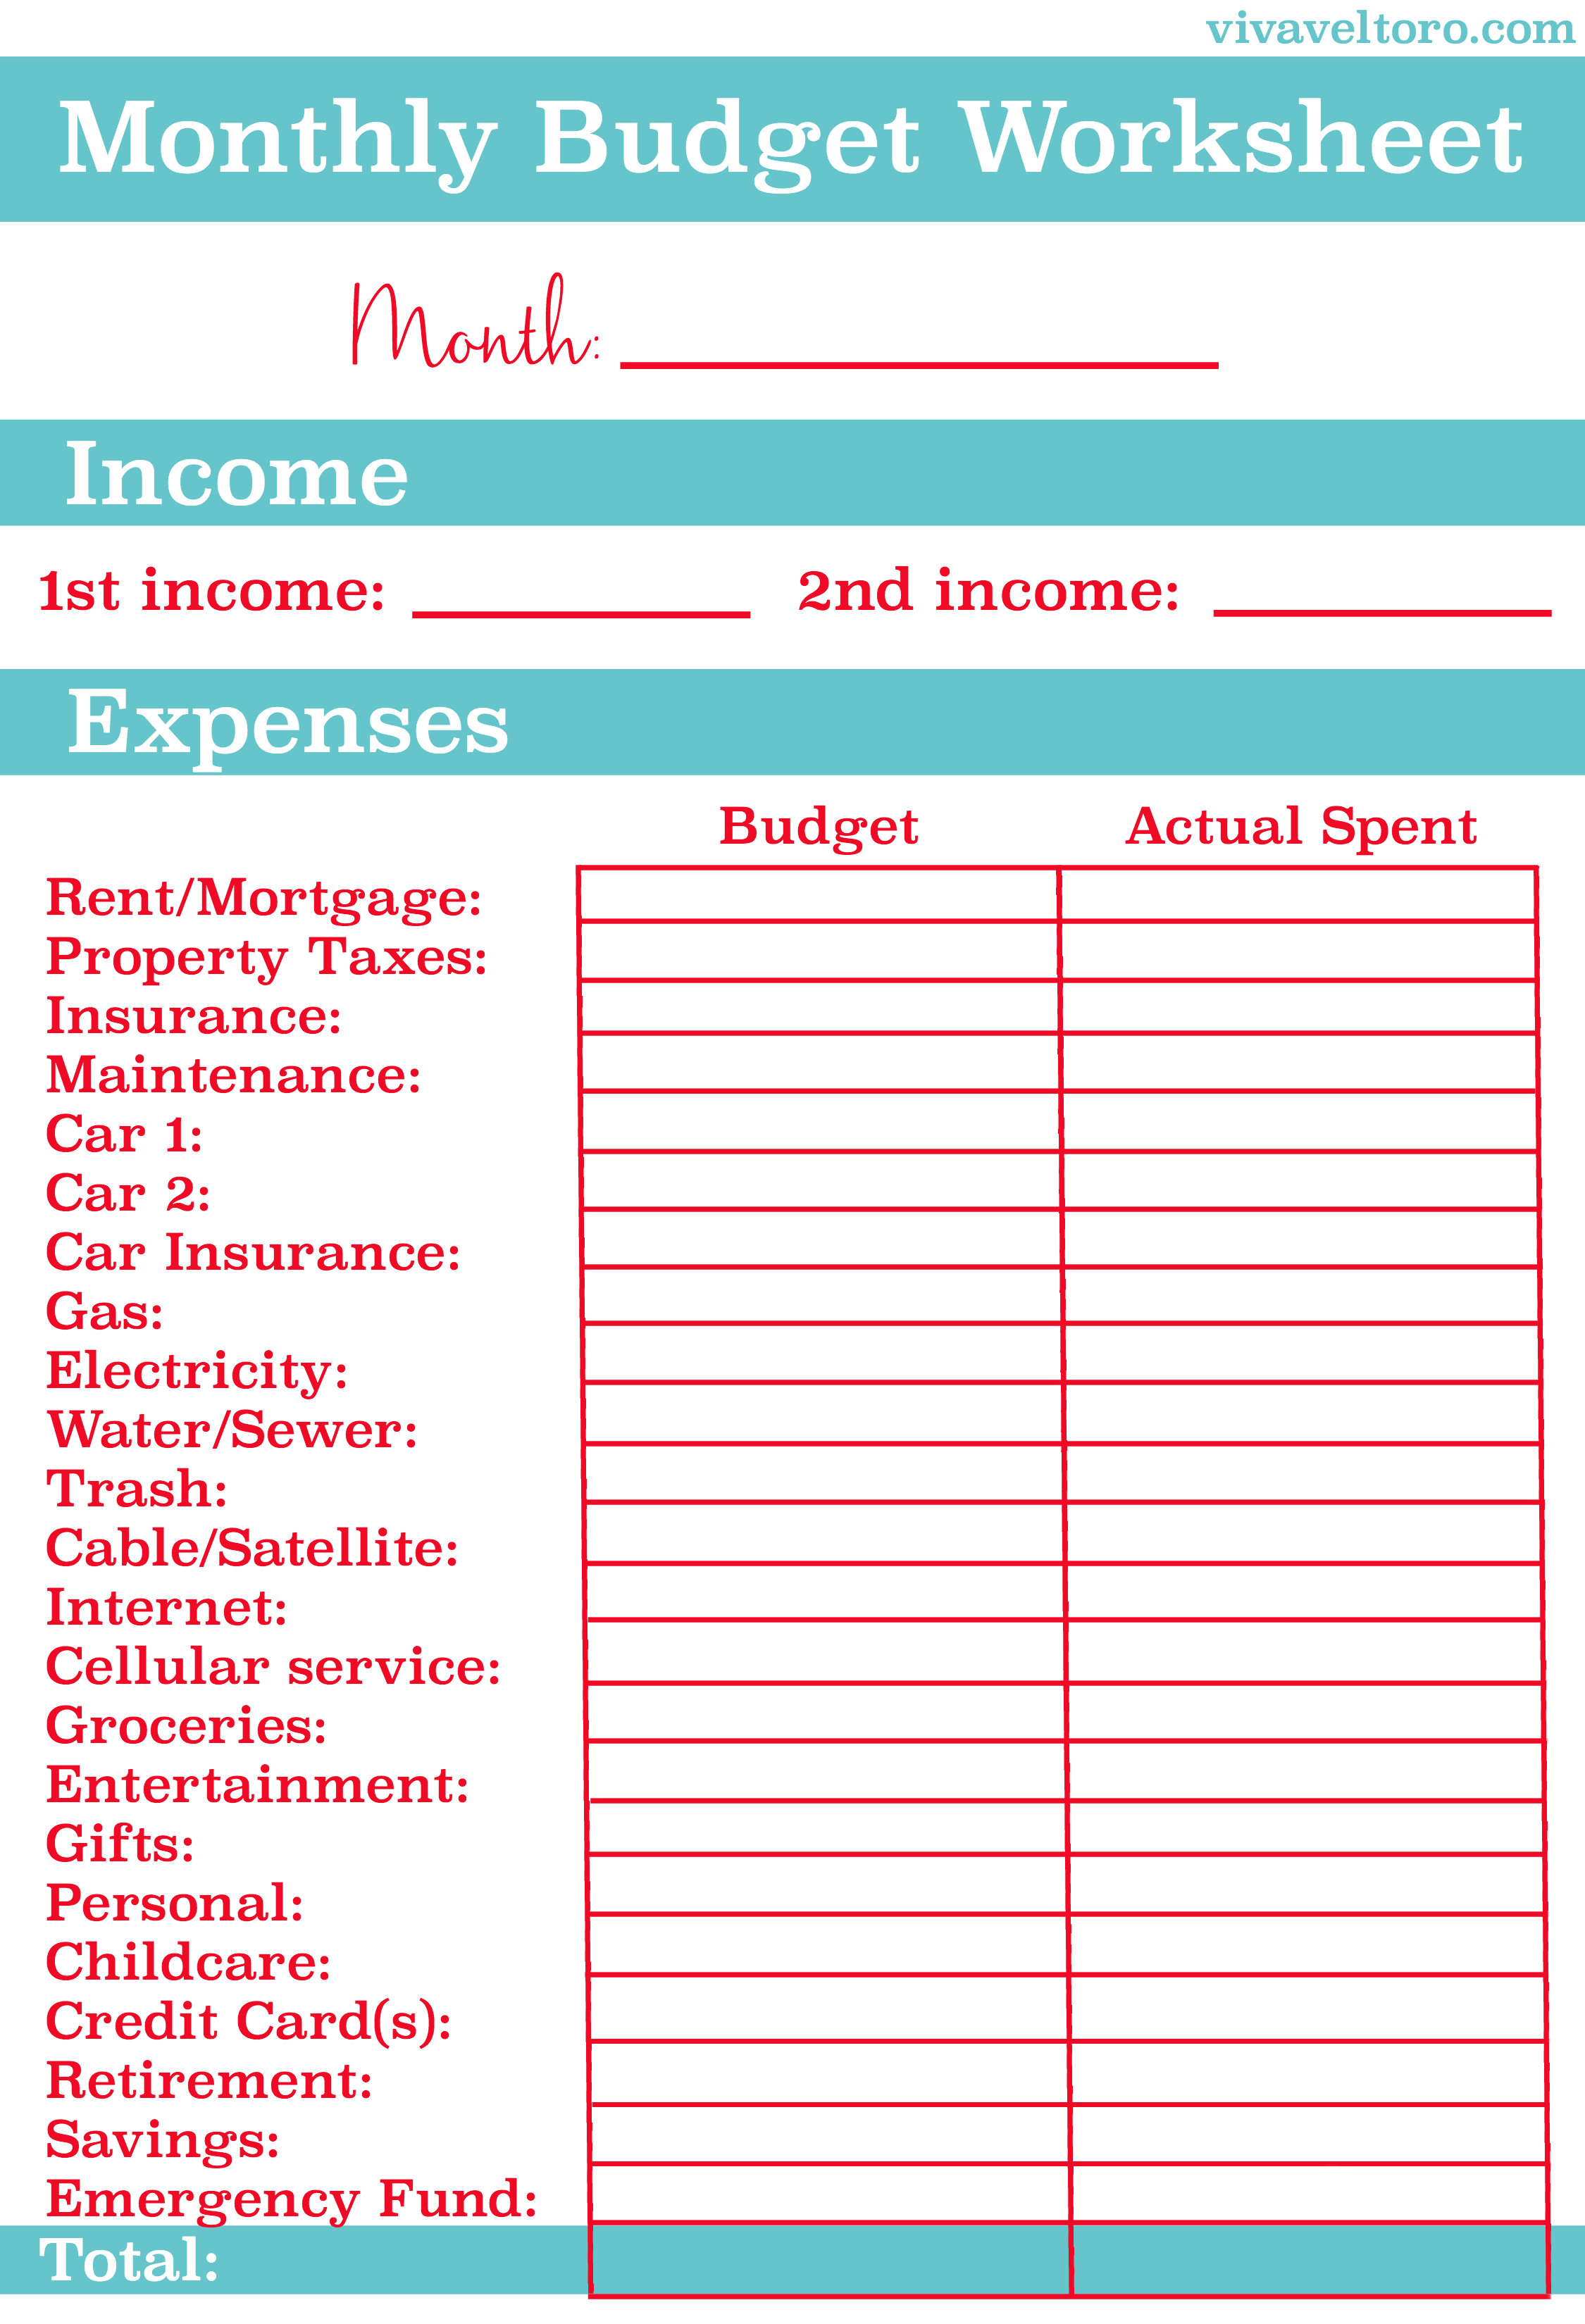 monthly budget worksheet printable | Homebiz4u2profit.com